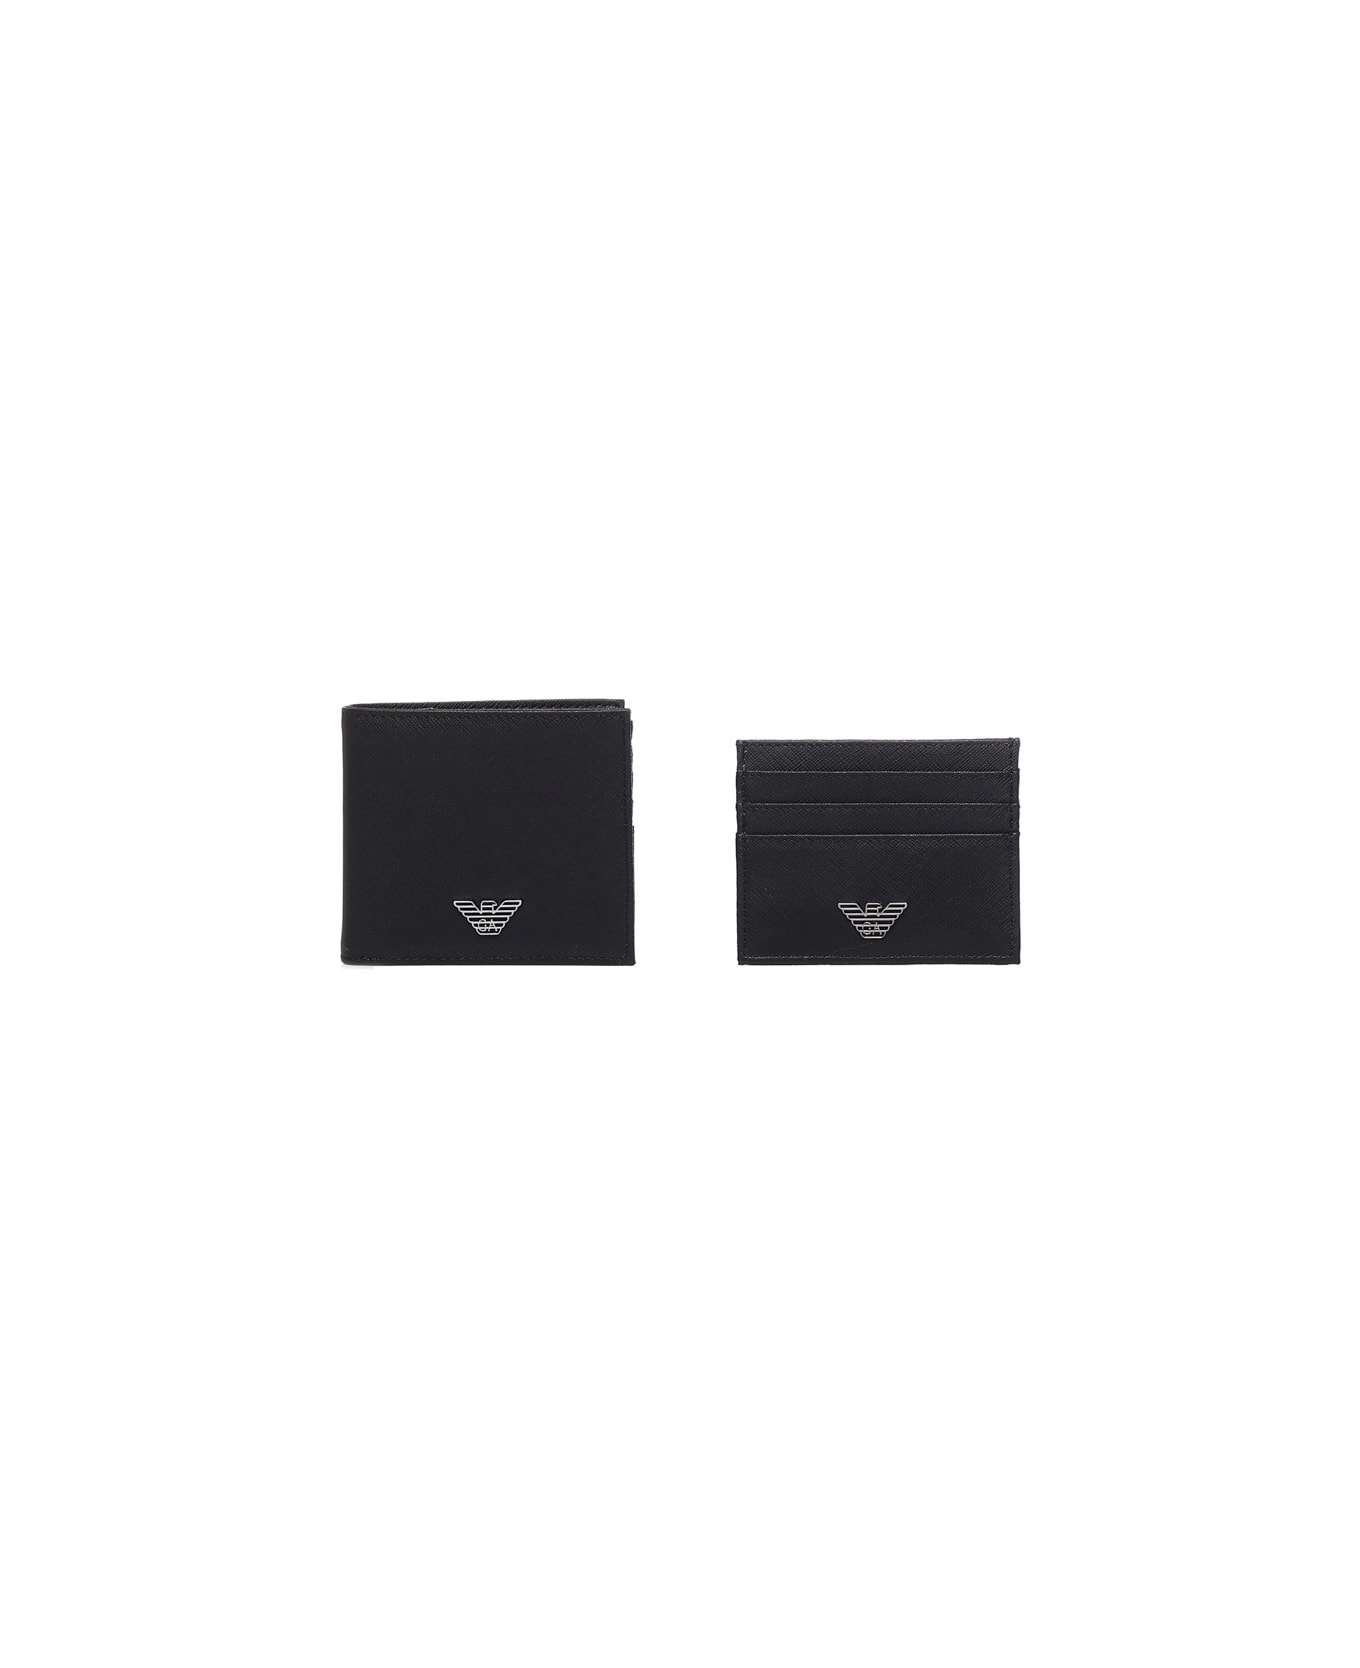 Emporio Armani Wallet With Application - Black